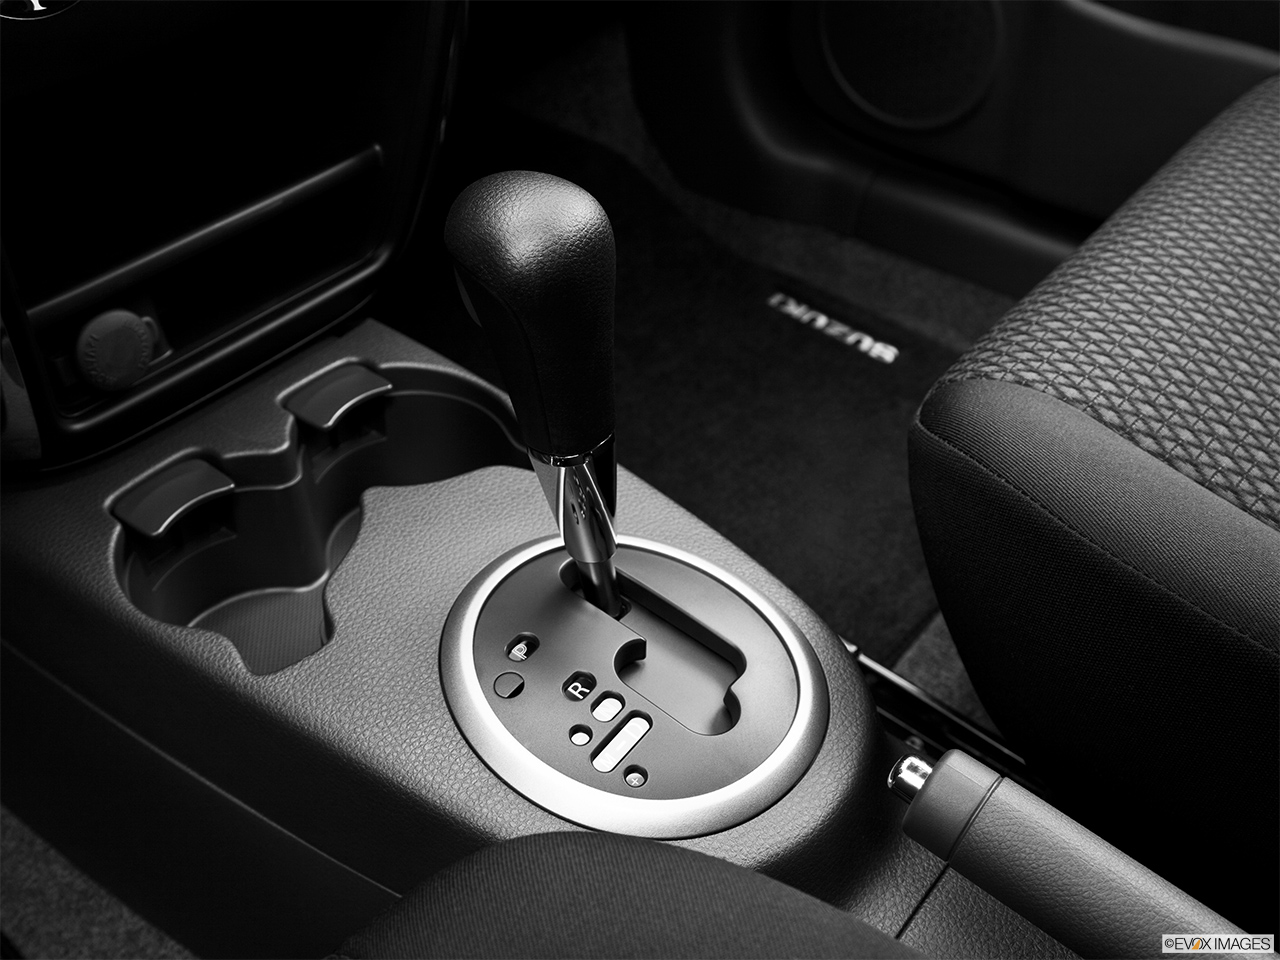 2013 Suzuki SX4 AWD Crossover Premium AT AWD Gear shifter/center console. 